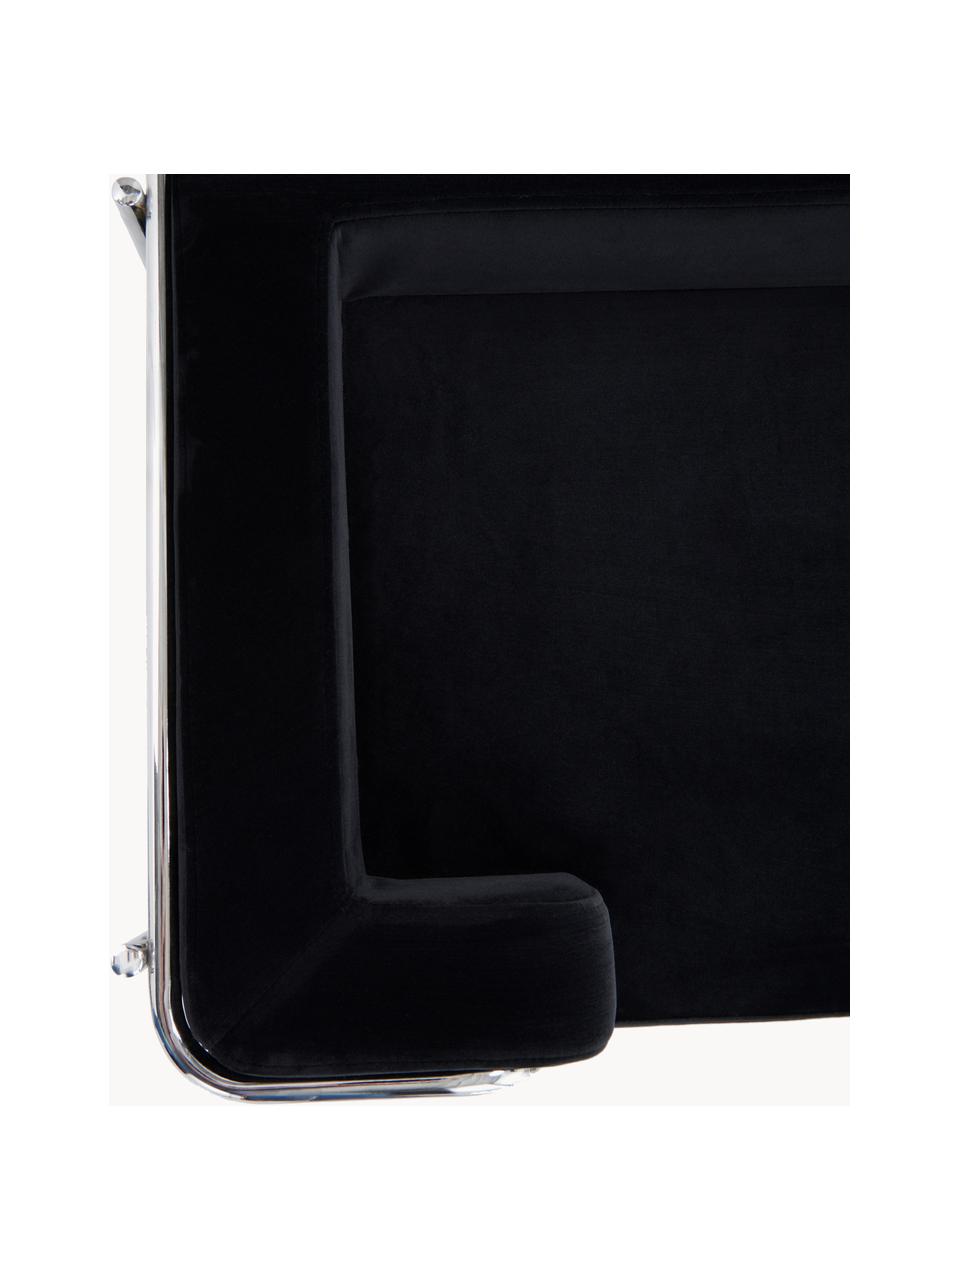 Fluwelen huisdierbed Fldo, Bekleding: fluweel (100% polyester), Frame: verchroomd metaal, Zwart, zilverkleurig, B 83 x D 52 cm